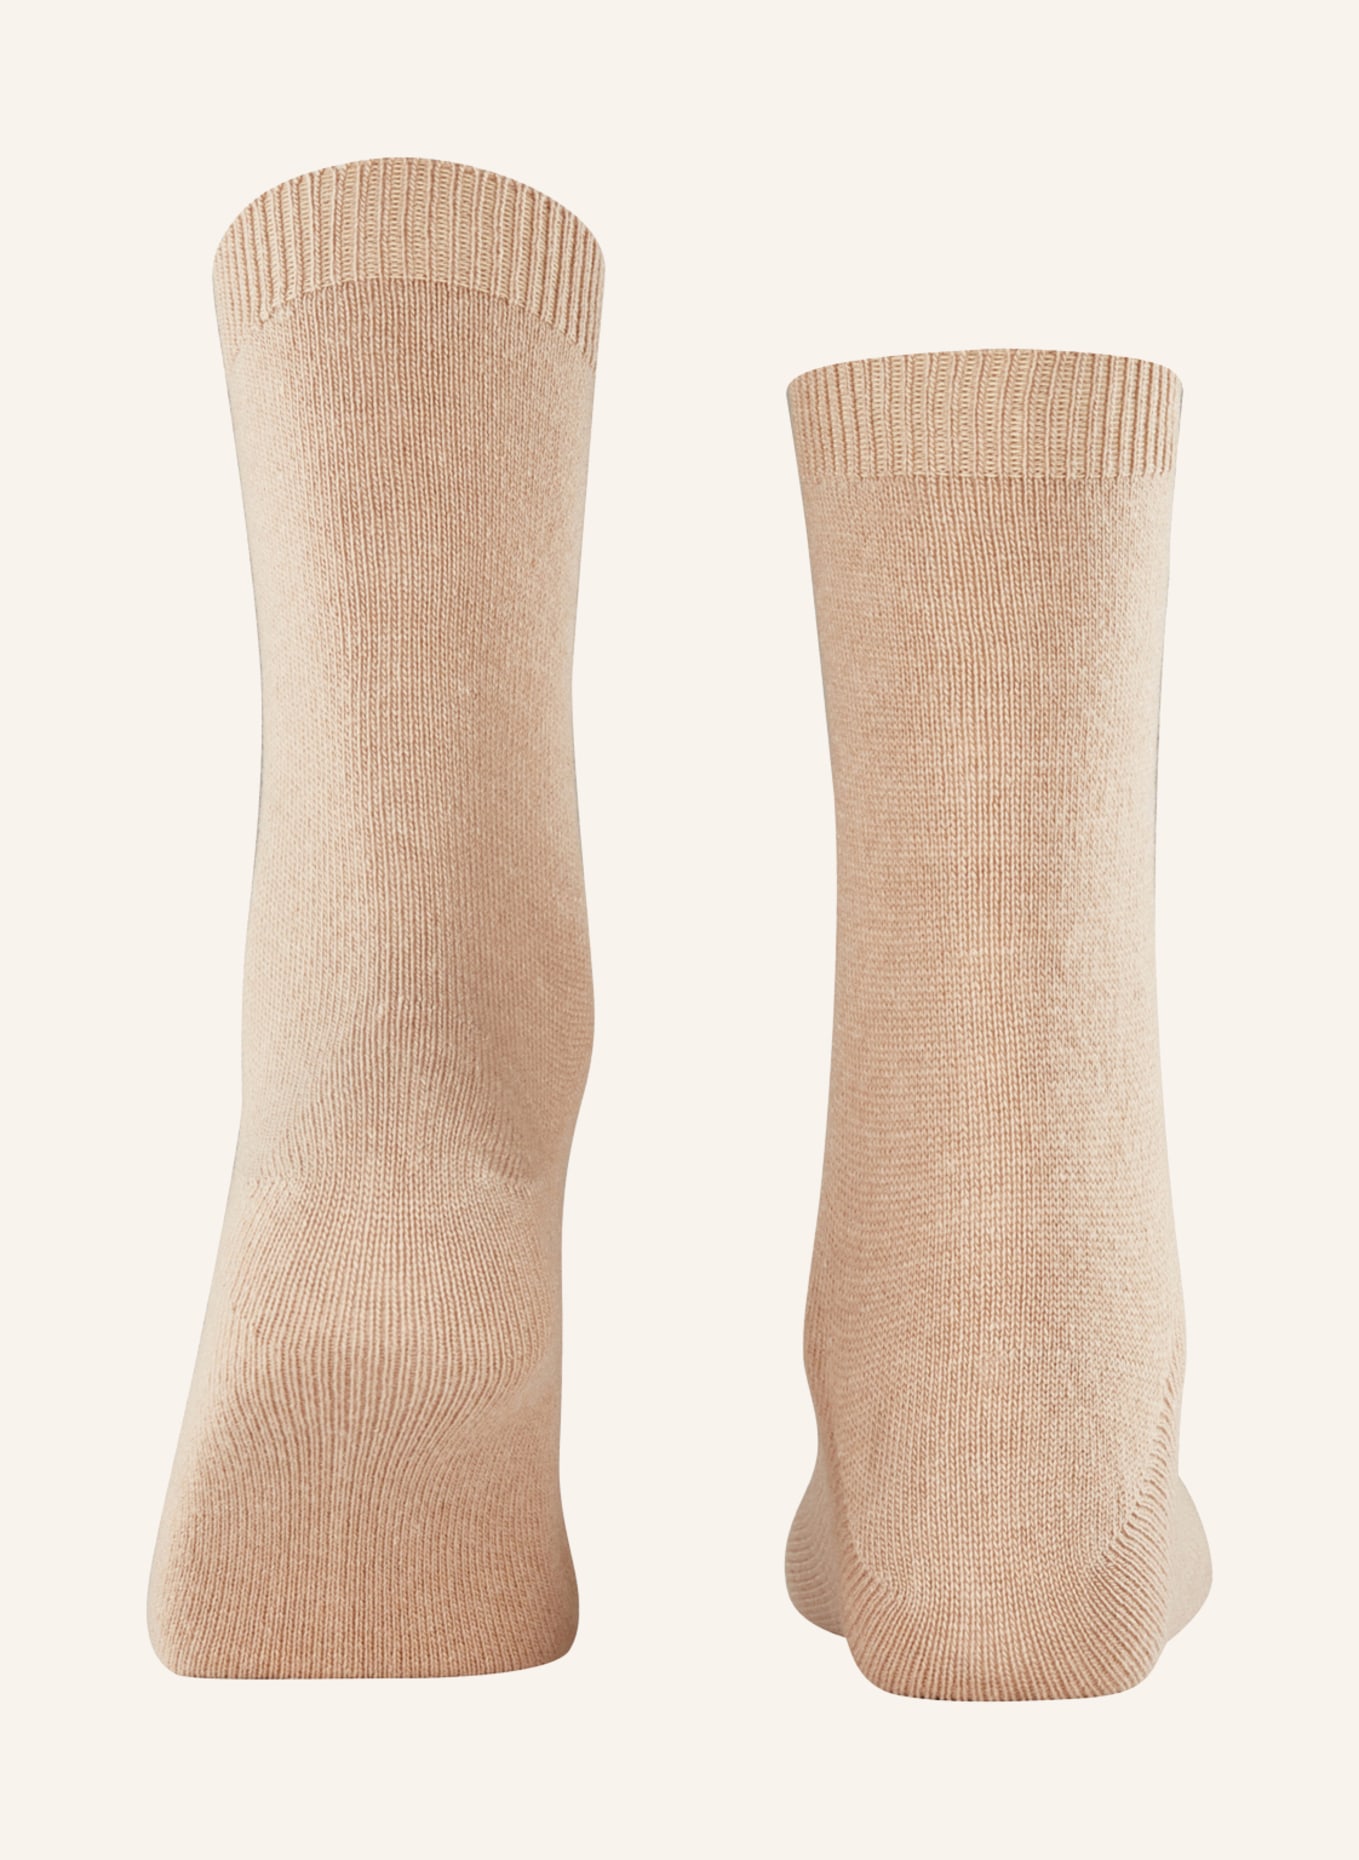 FALKE Socken COSY WOOL mit Merinowolle , Farbe: 4220 CAMEL (Bild 2)